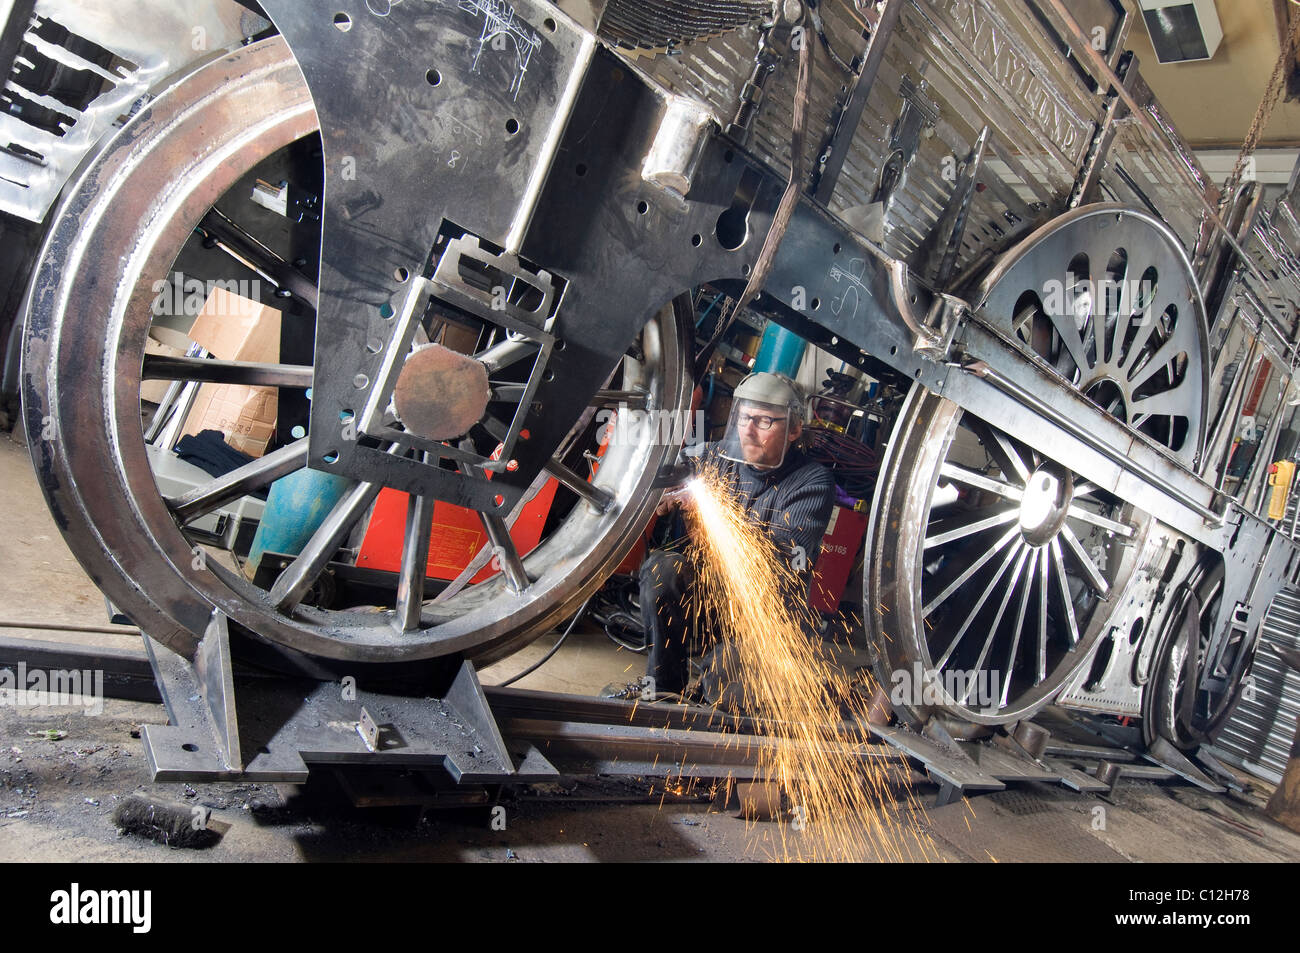 Scultore Jon Mills saldature telaio della sua lifesize ma due illustrazioni dimensionali basati sul treno a vapore "Jenny Lind' Foto Stock